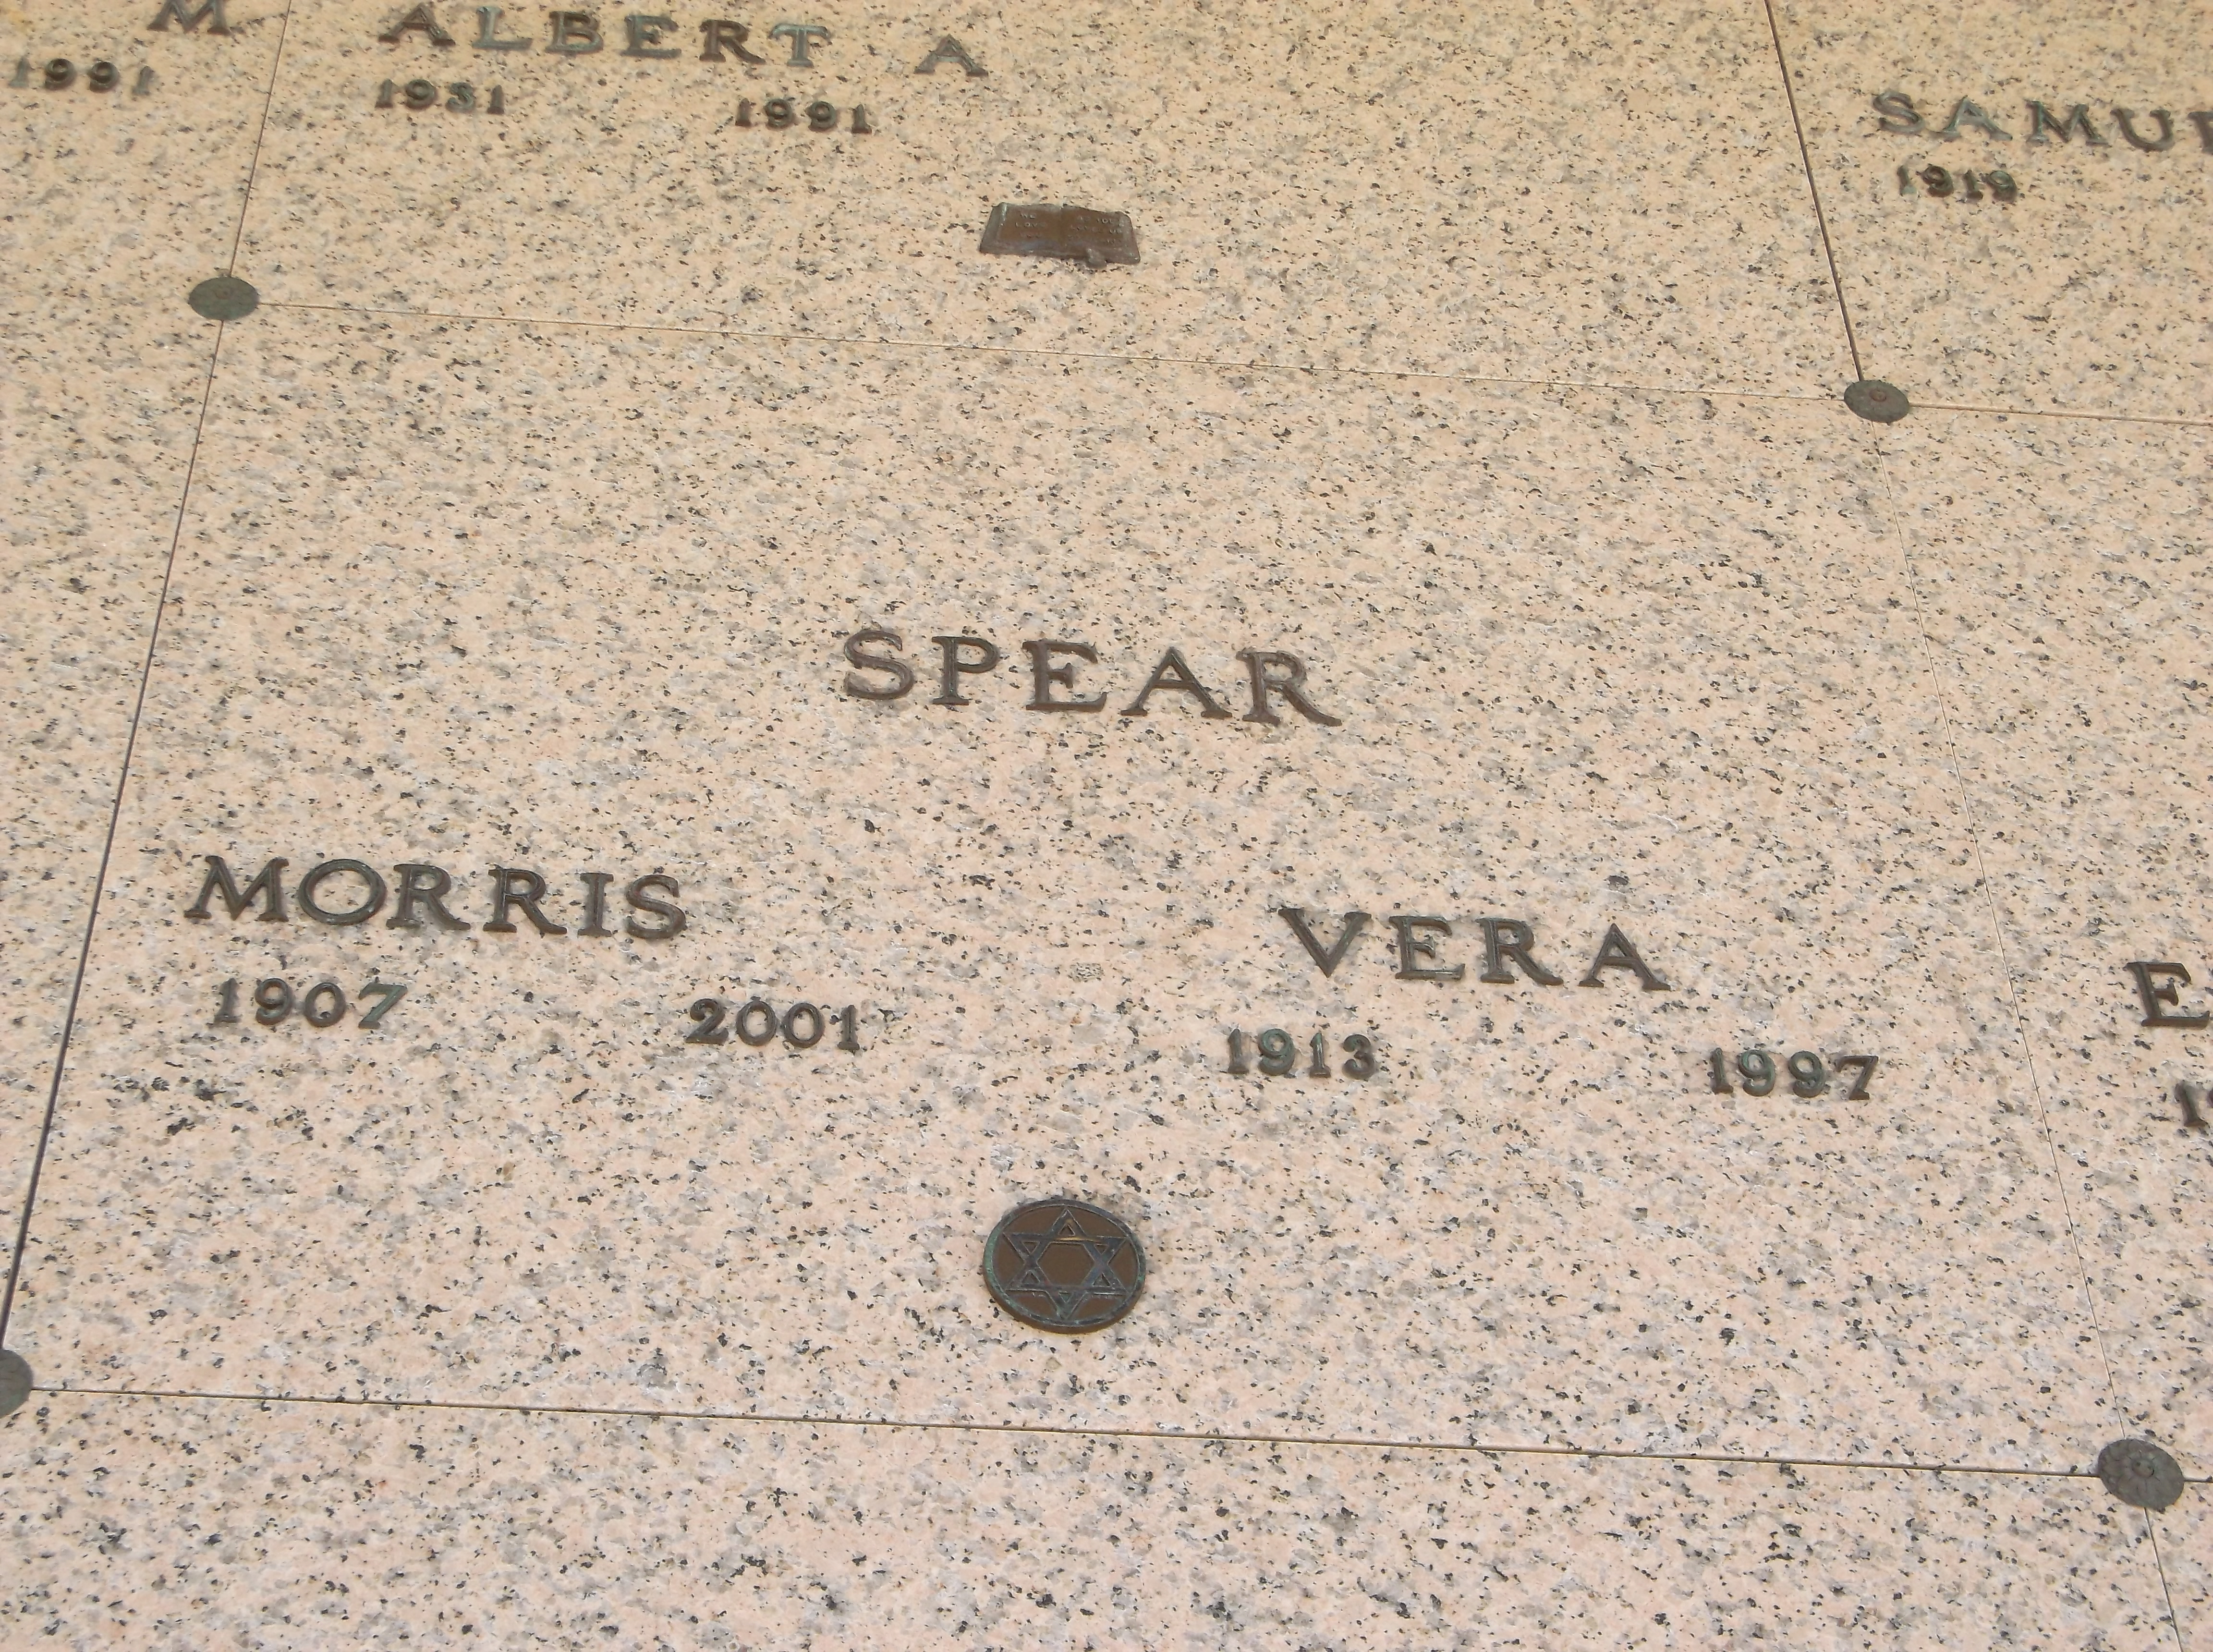 Morris Spear